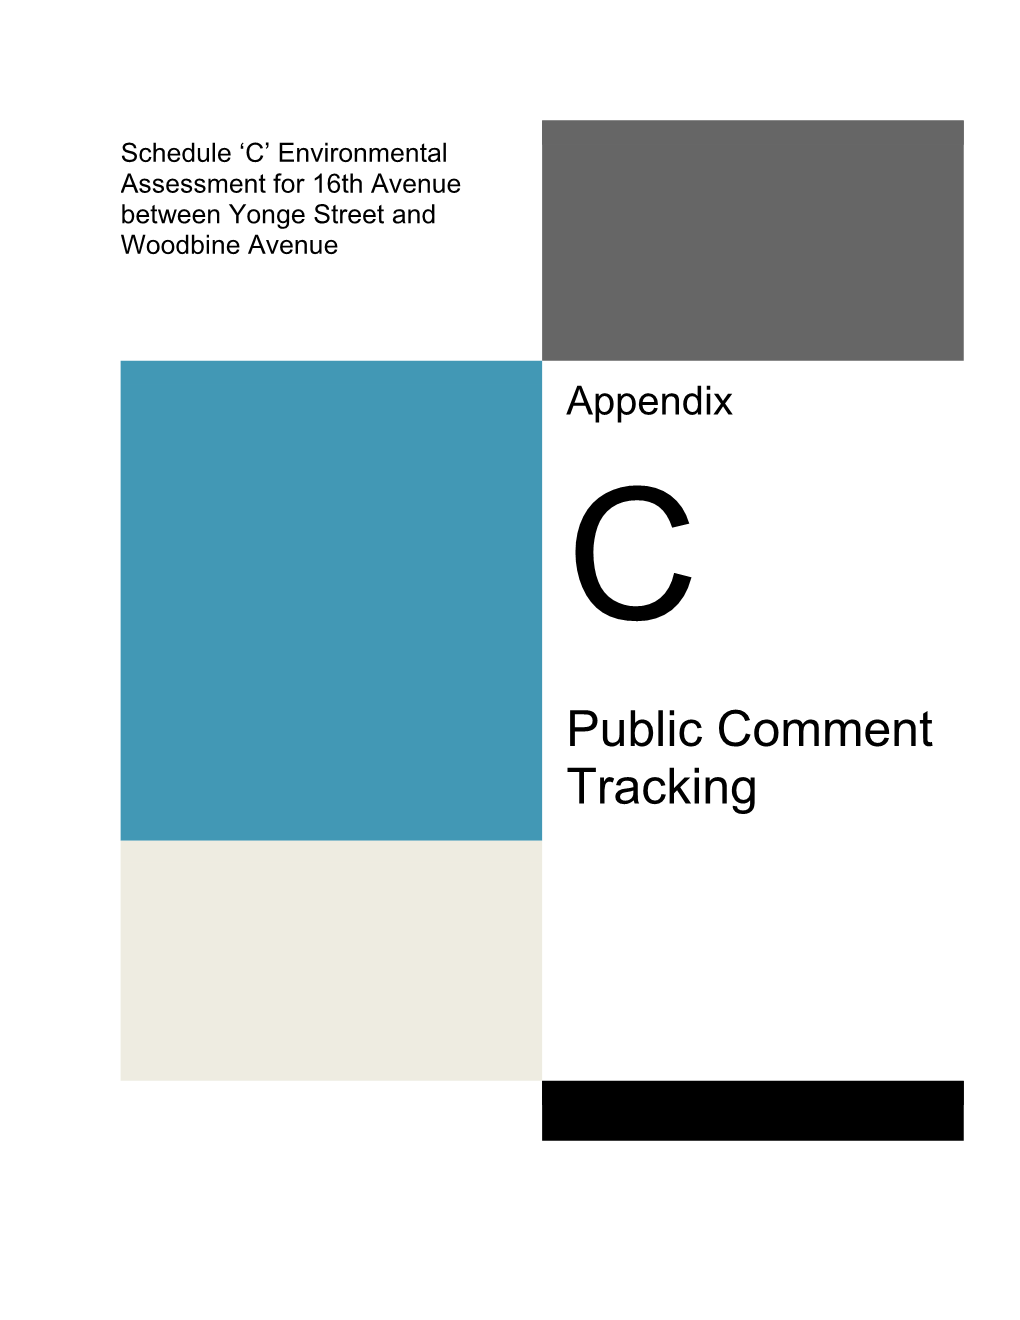 Appendix C Public Comment Tracking